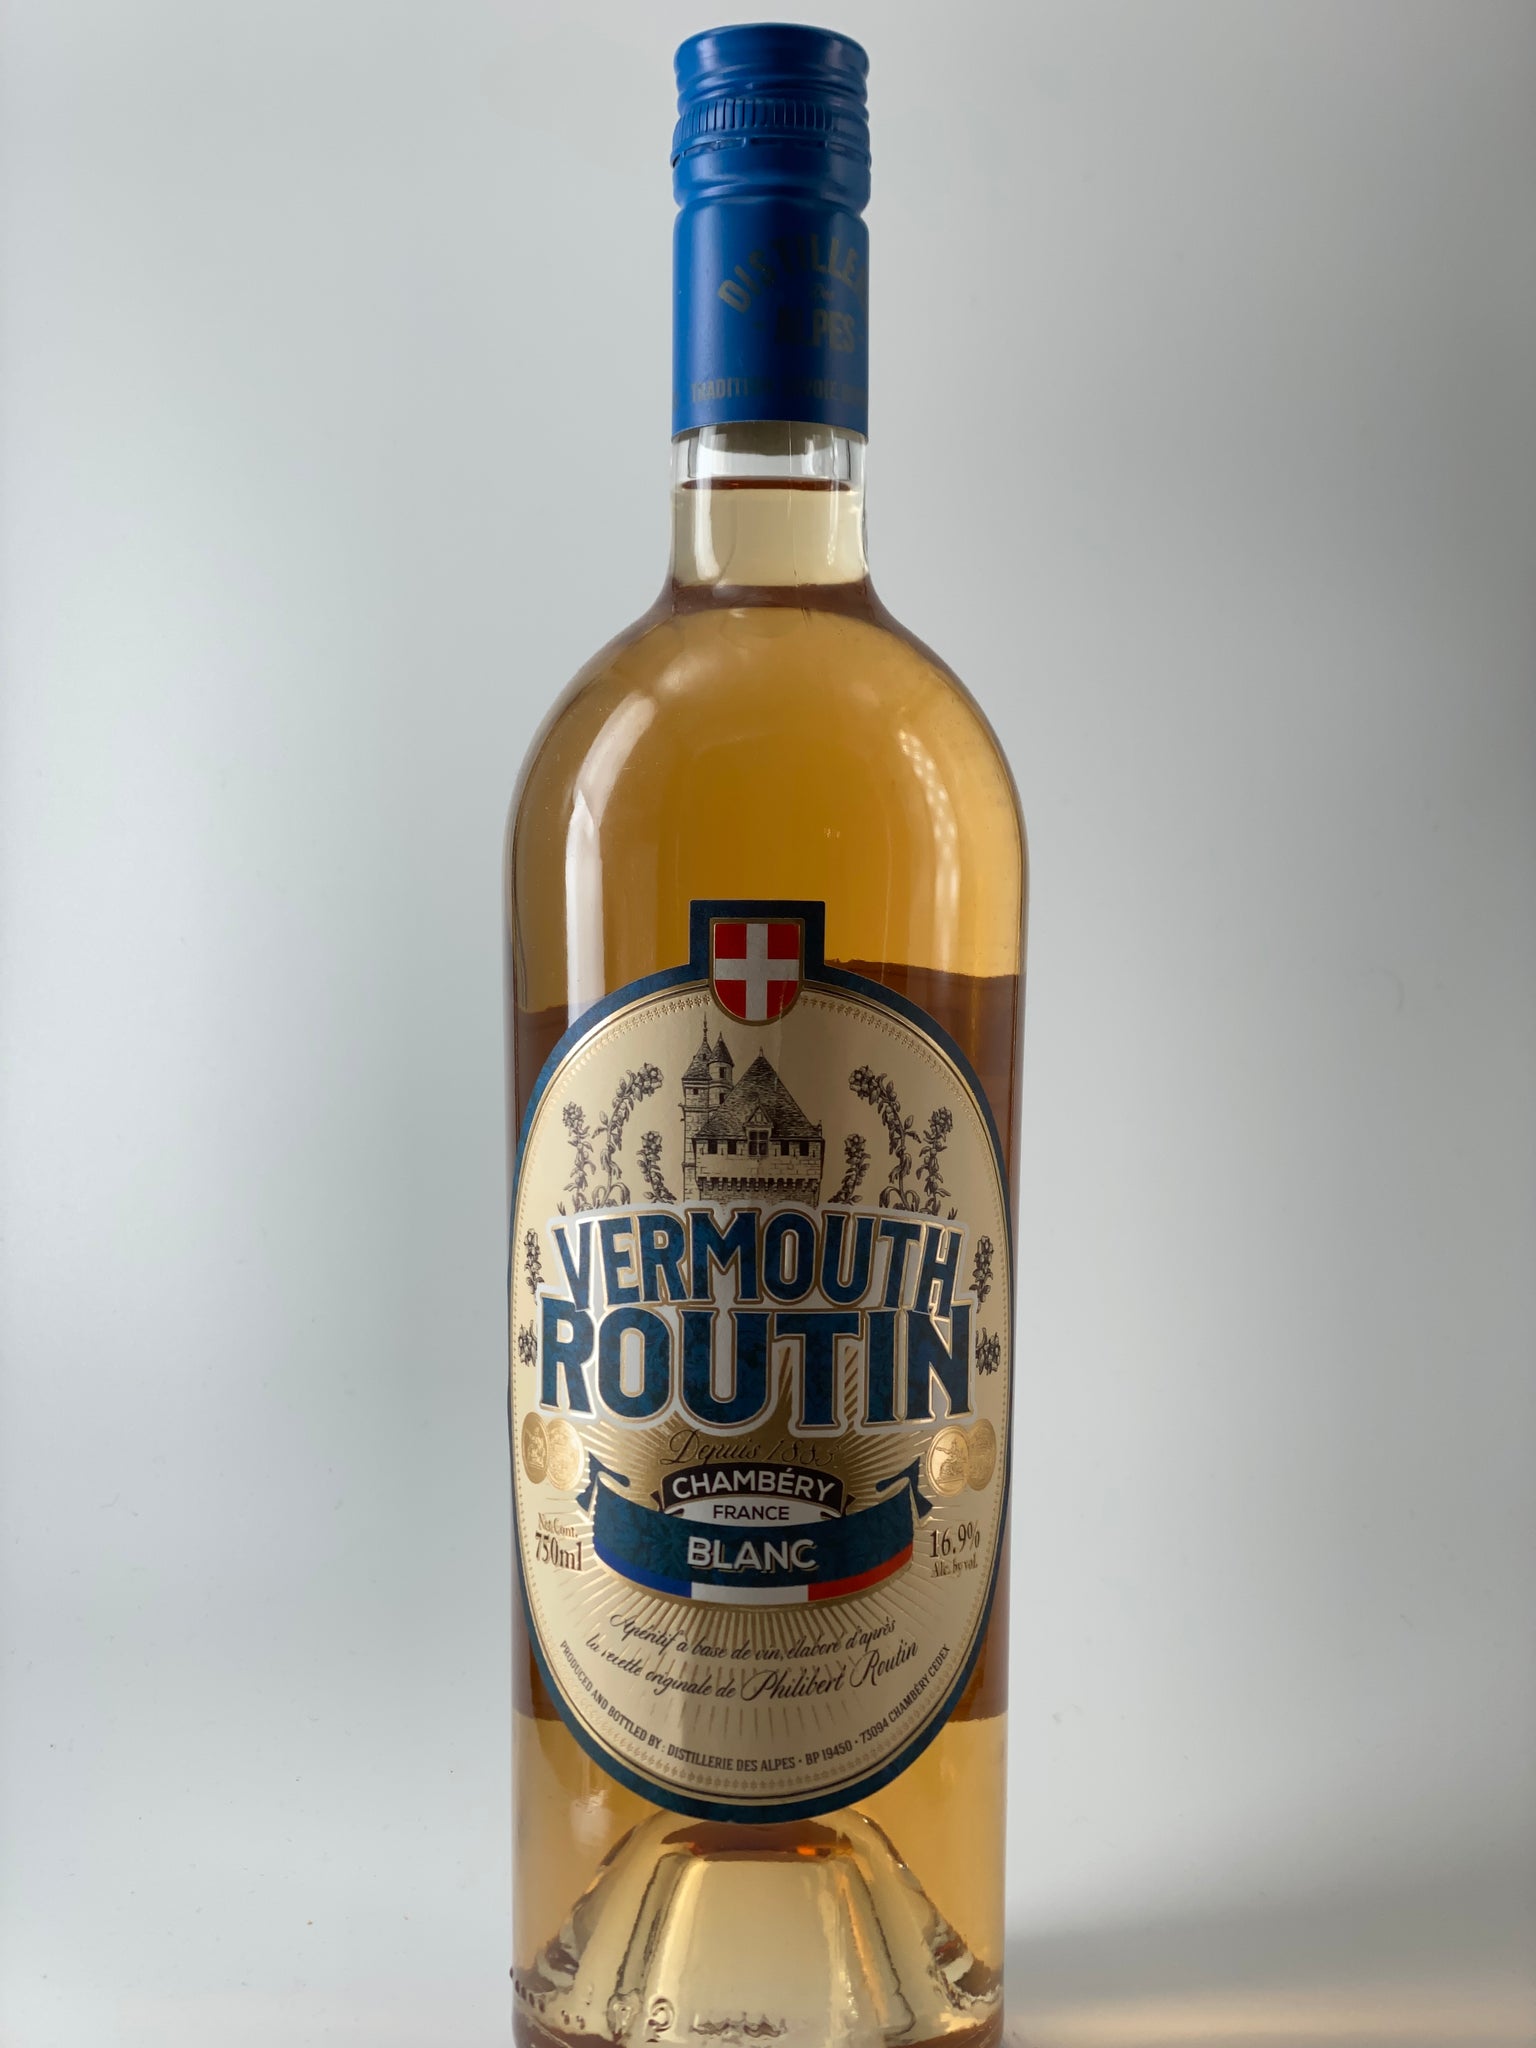 Vermouth, Routin, Blanc